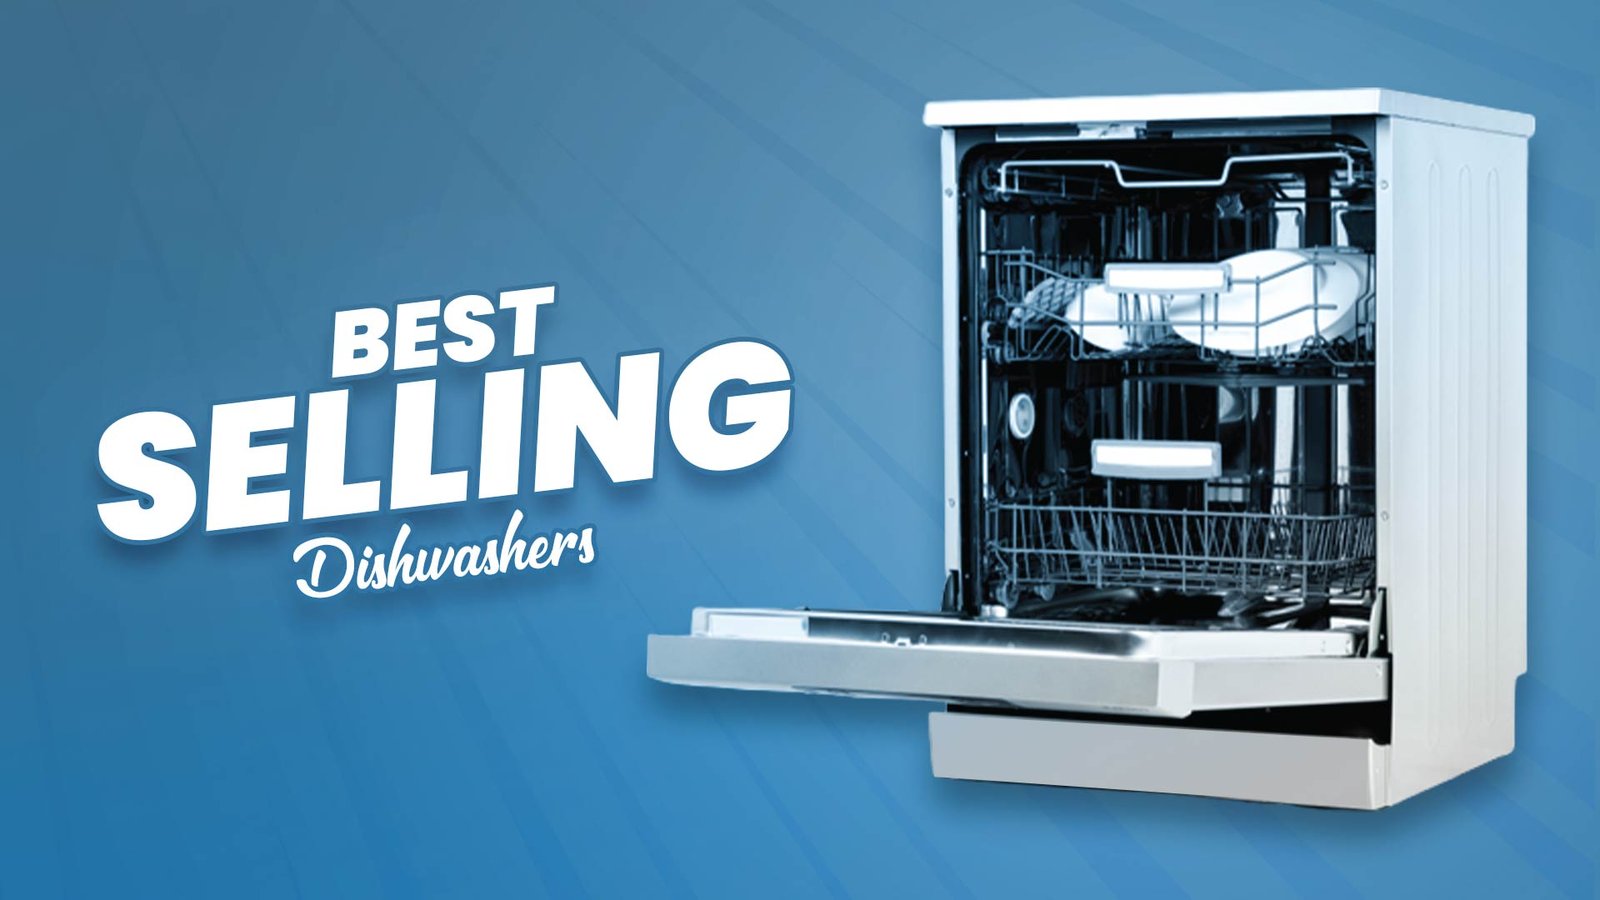 Best Selling Dishwashers.1 